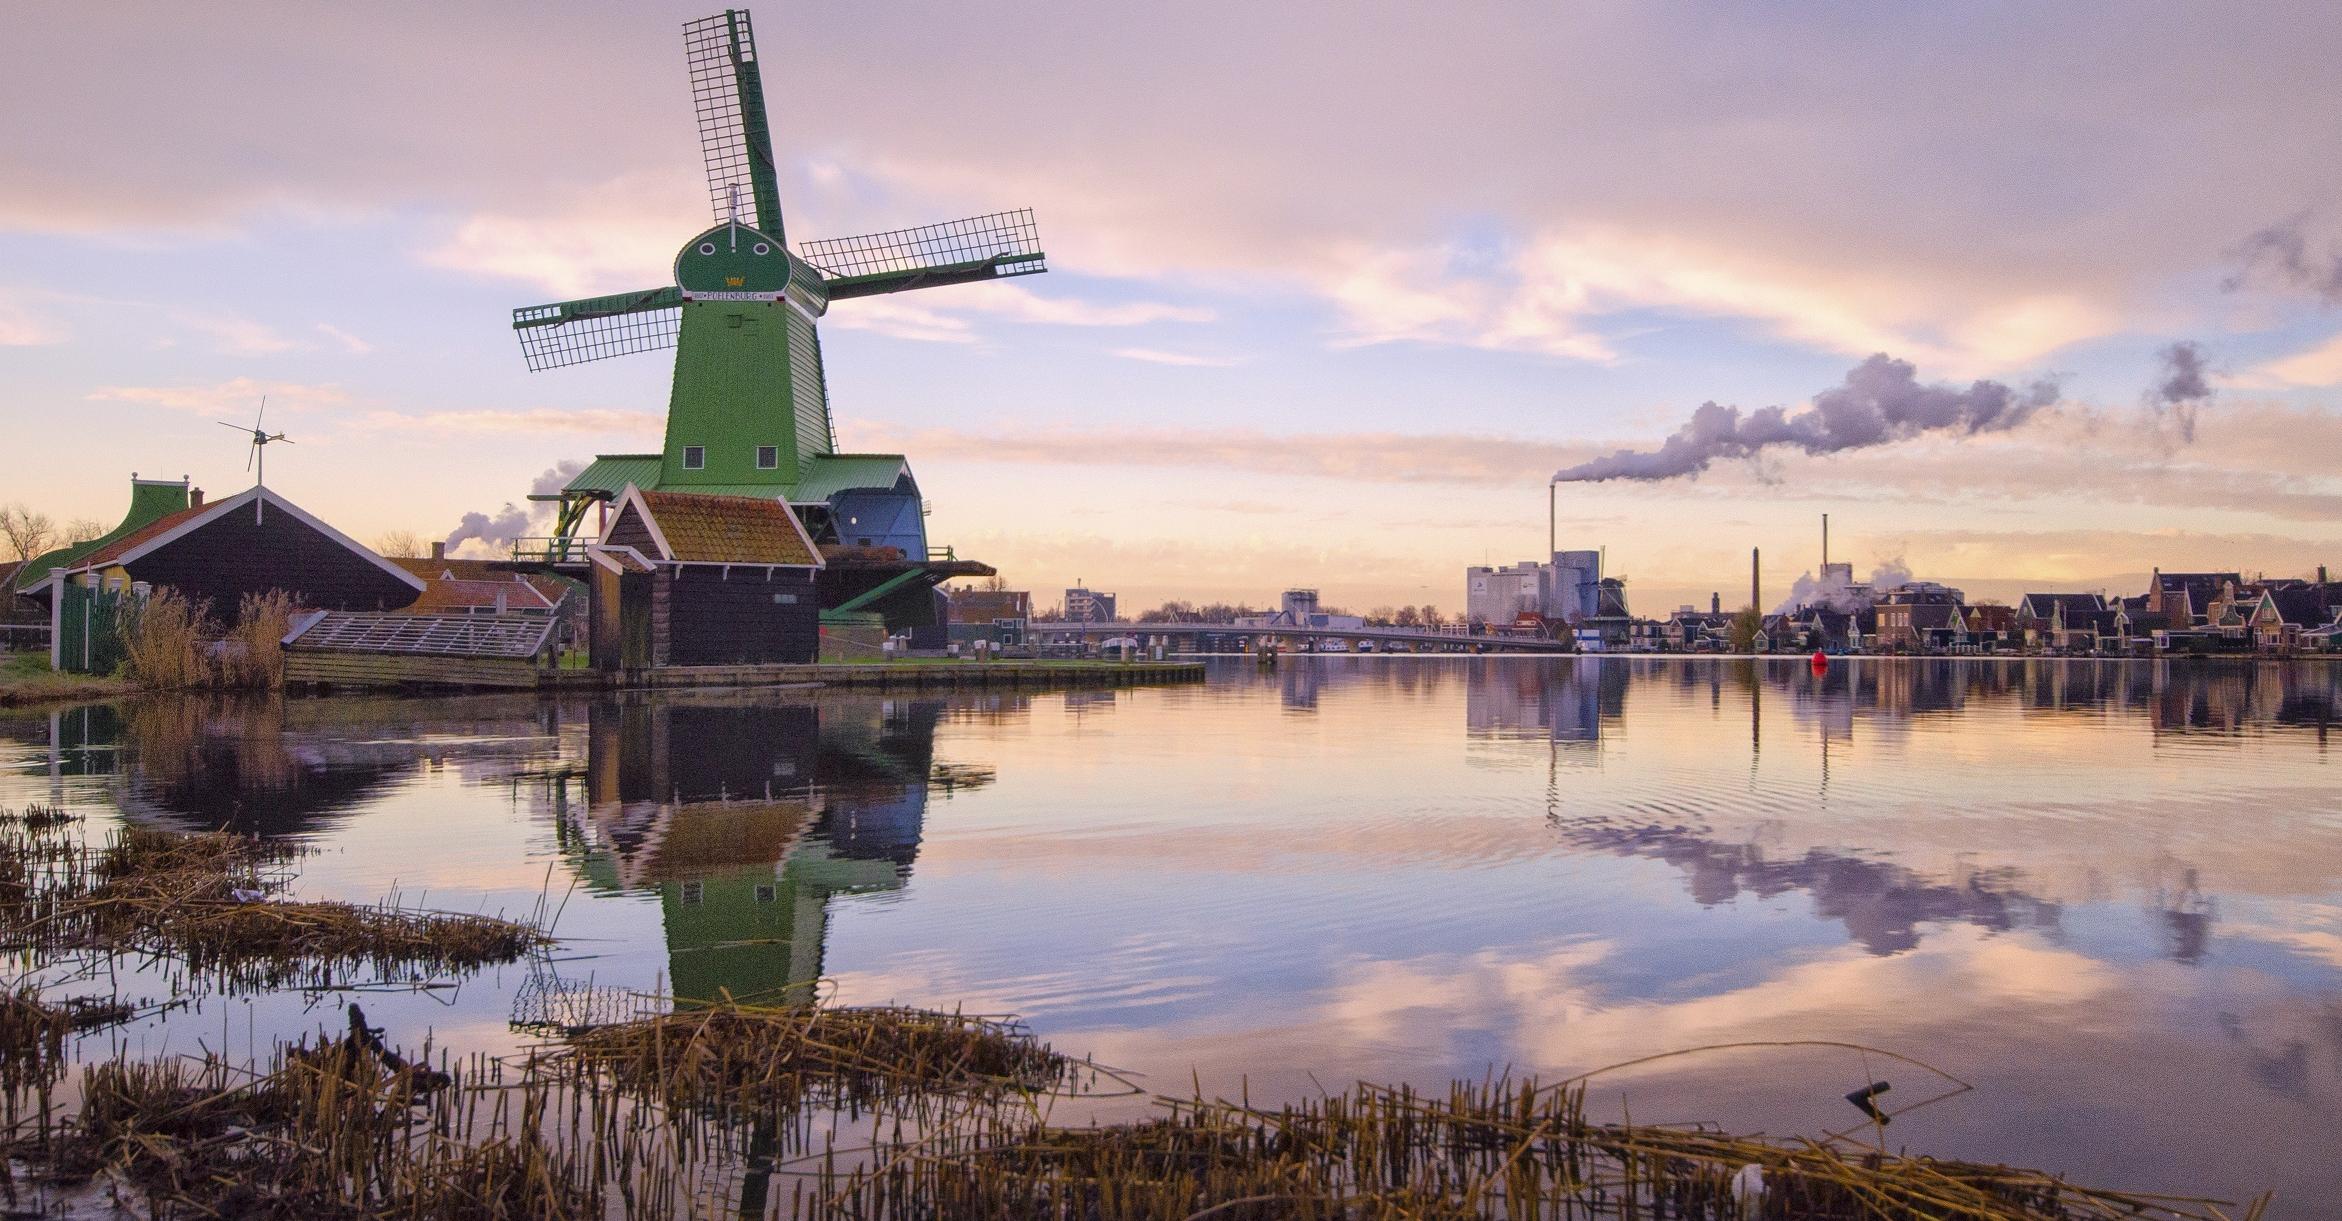 Laimutės Kurienės fotografijų paroda „Olandijos siluetai“